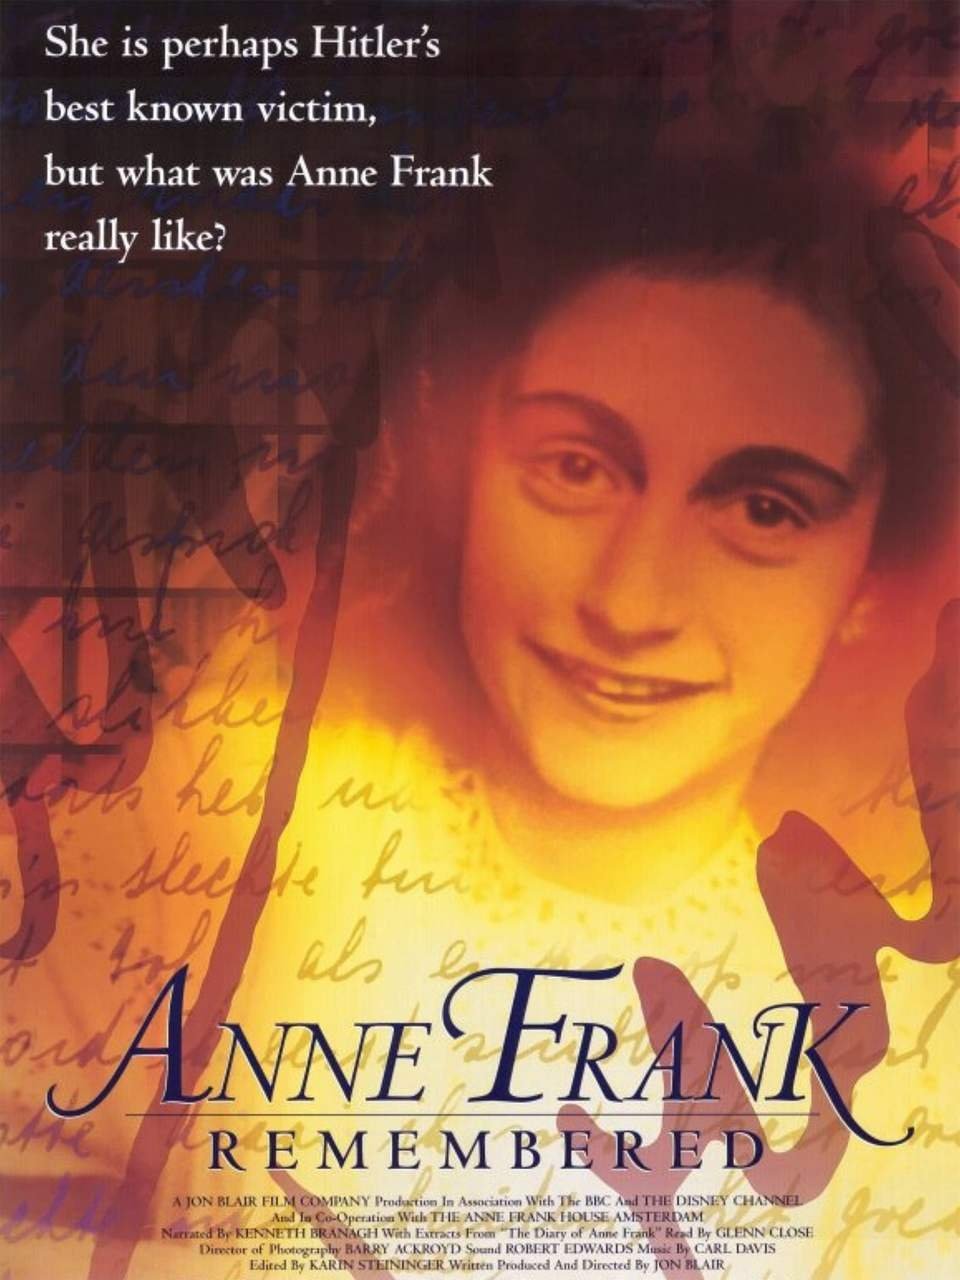 A lembrança de Anne Frank (1995): O documentário “Anne Frank Remembered”, em inglês, foi premiado com um Oscar, um Emmy Internacional e um BAFTA de melhor documentário. Reprodução: Flipar